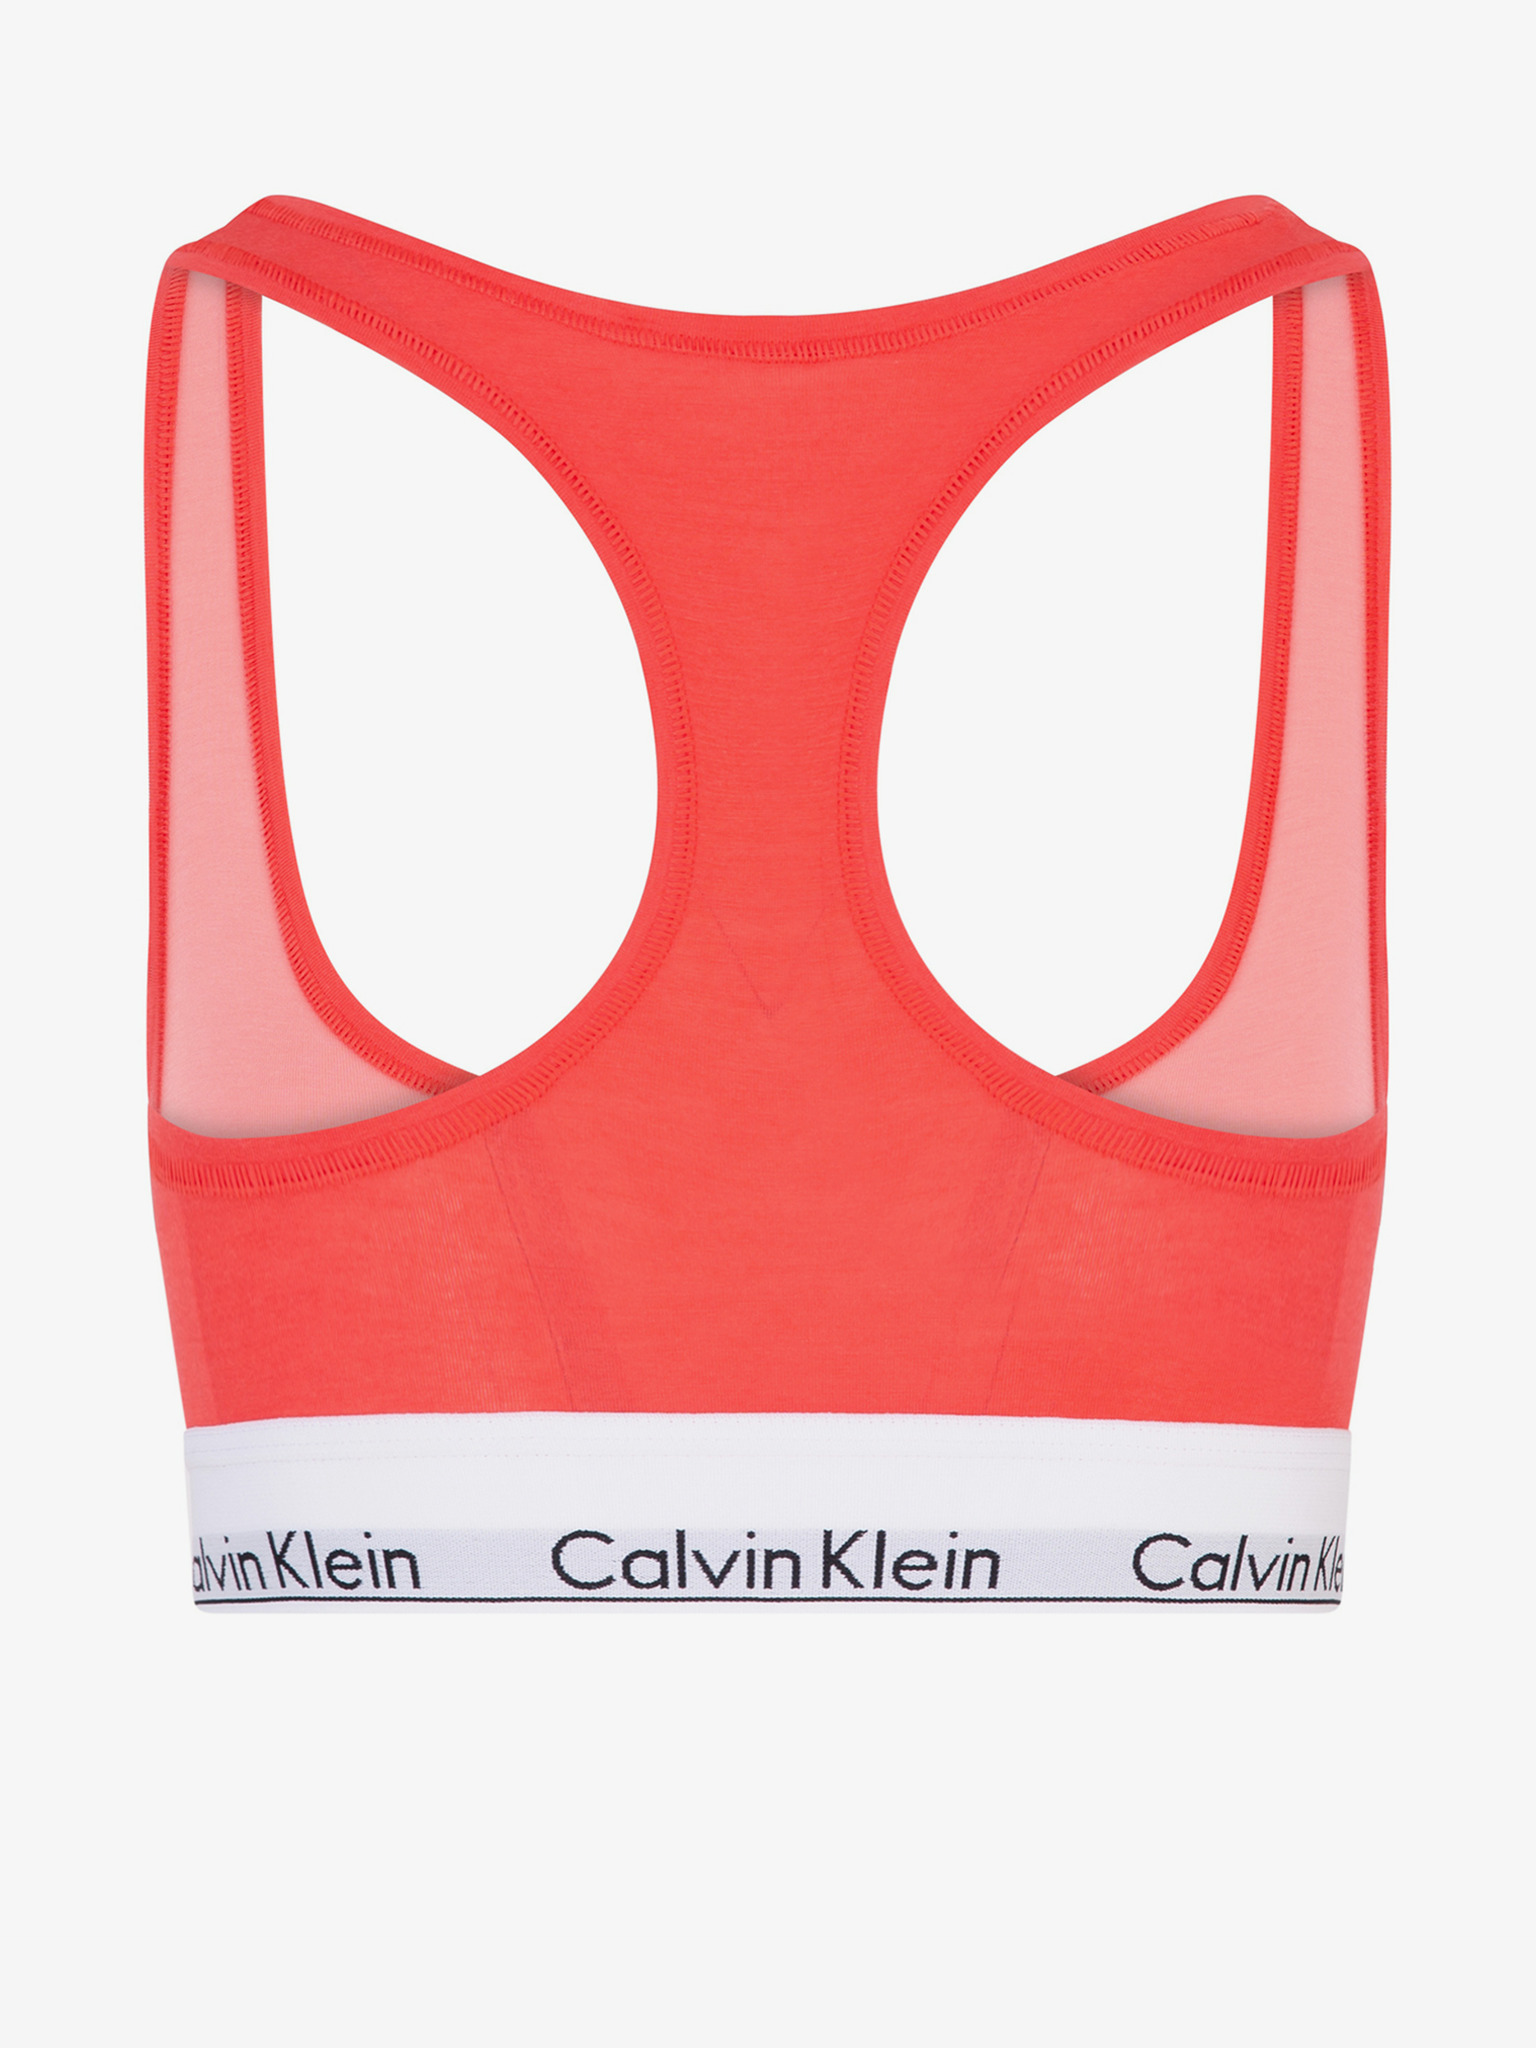 Calvin Klein Underwear - Bra